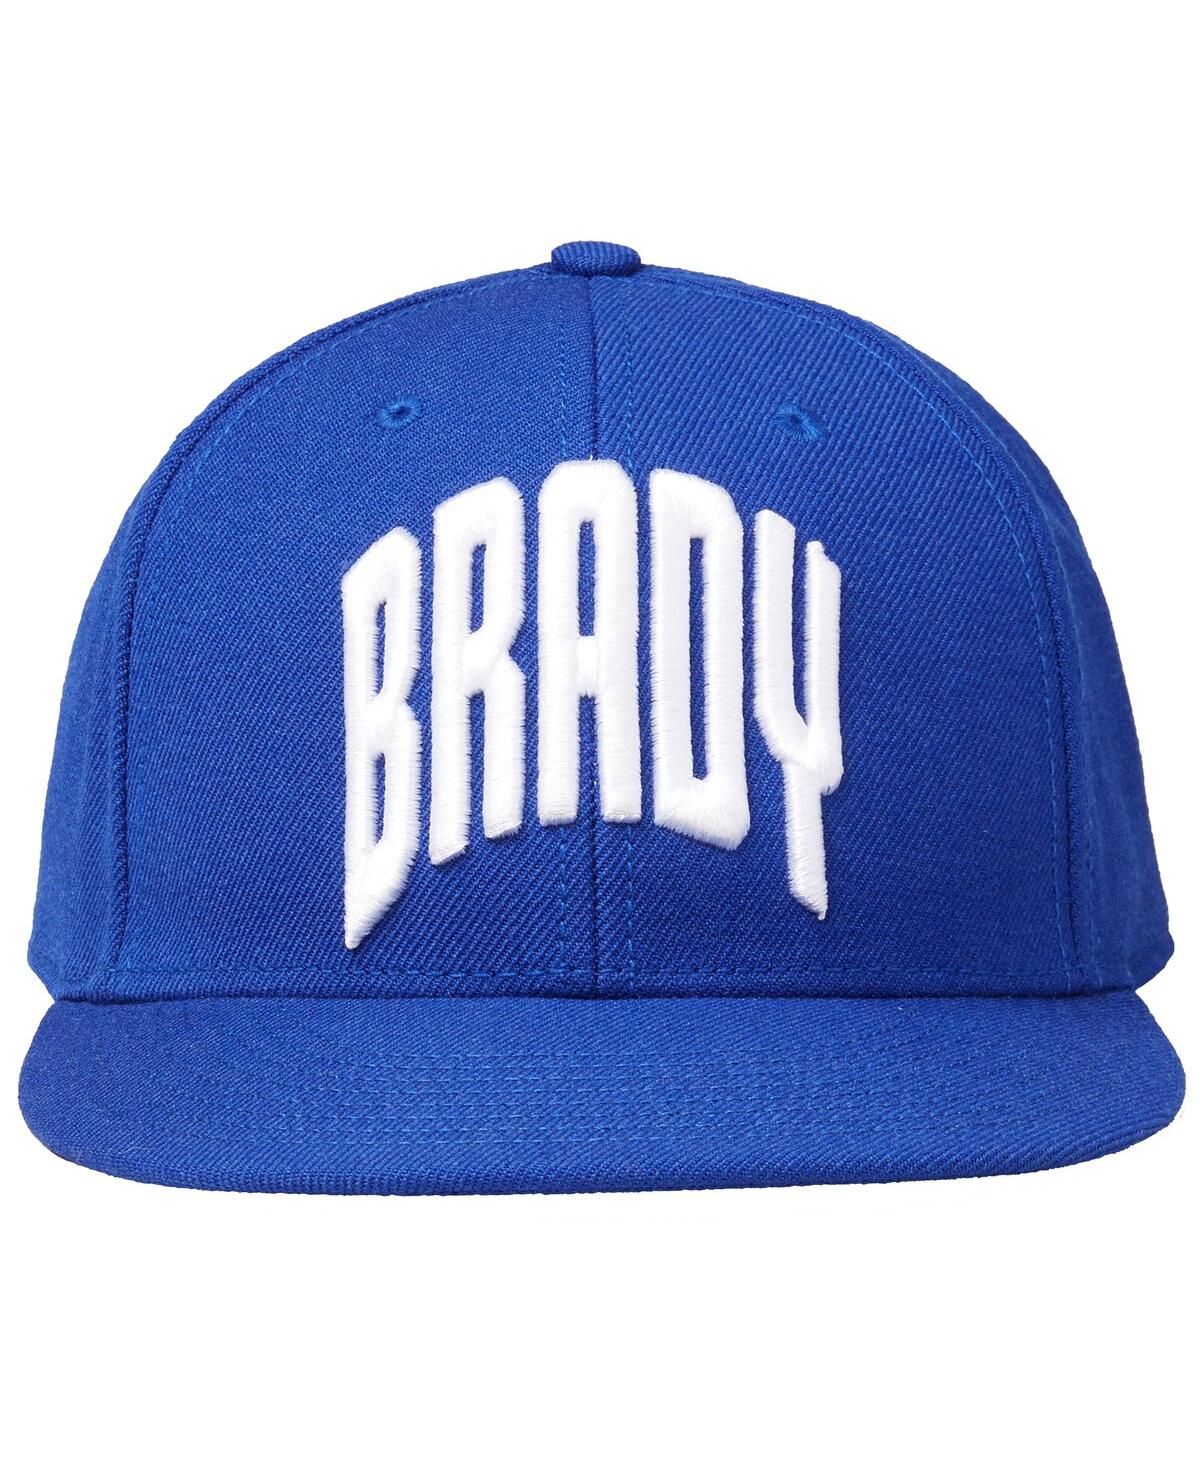 Men's Brady Brady Blue Fitted Hat - Brady Blue